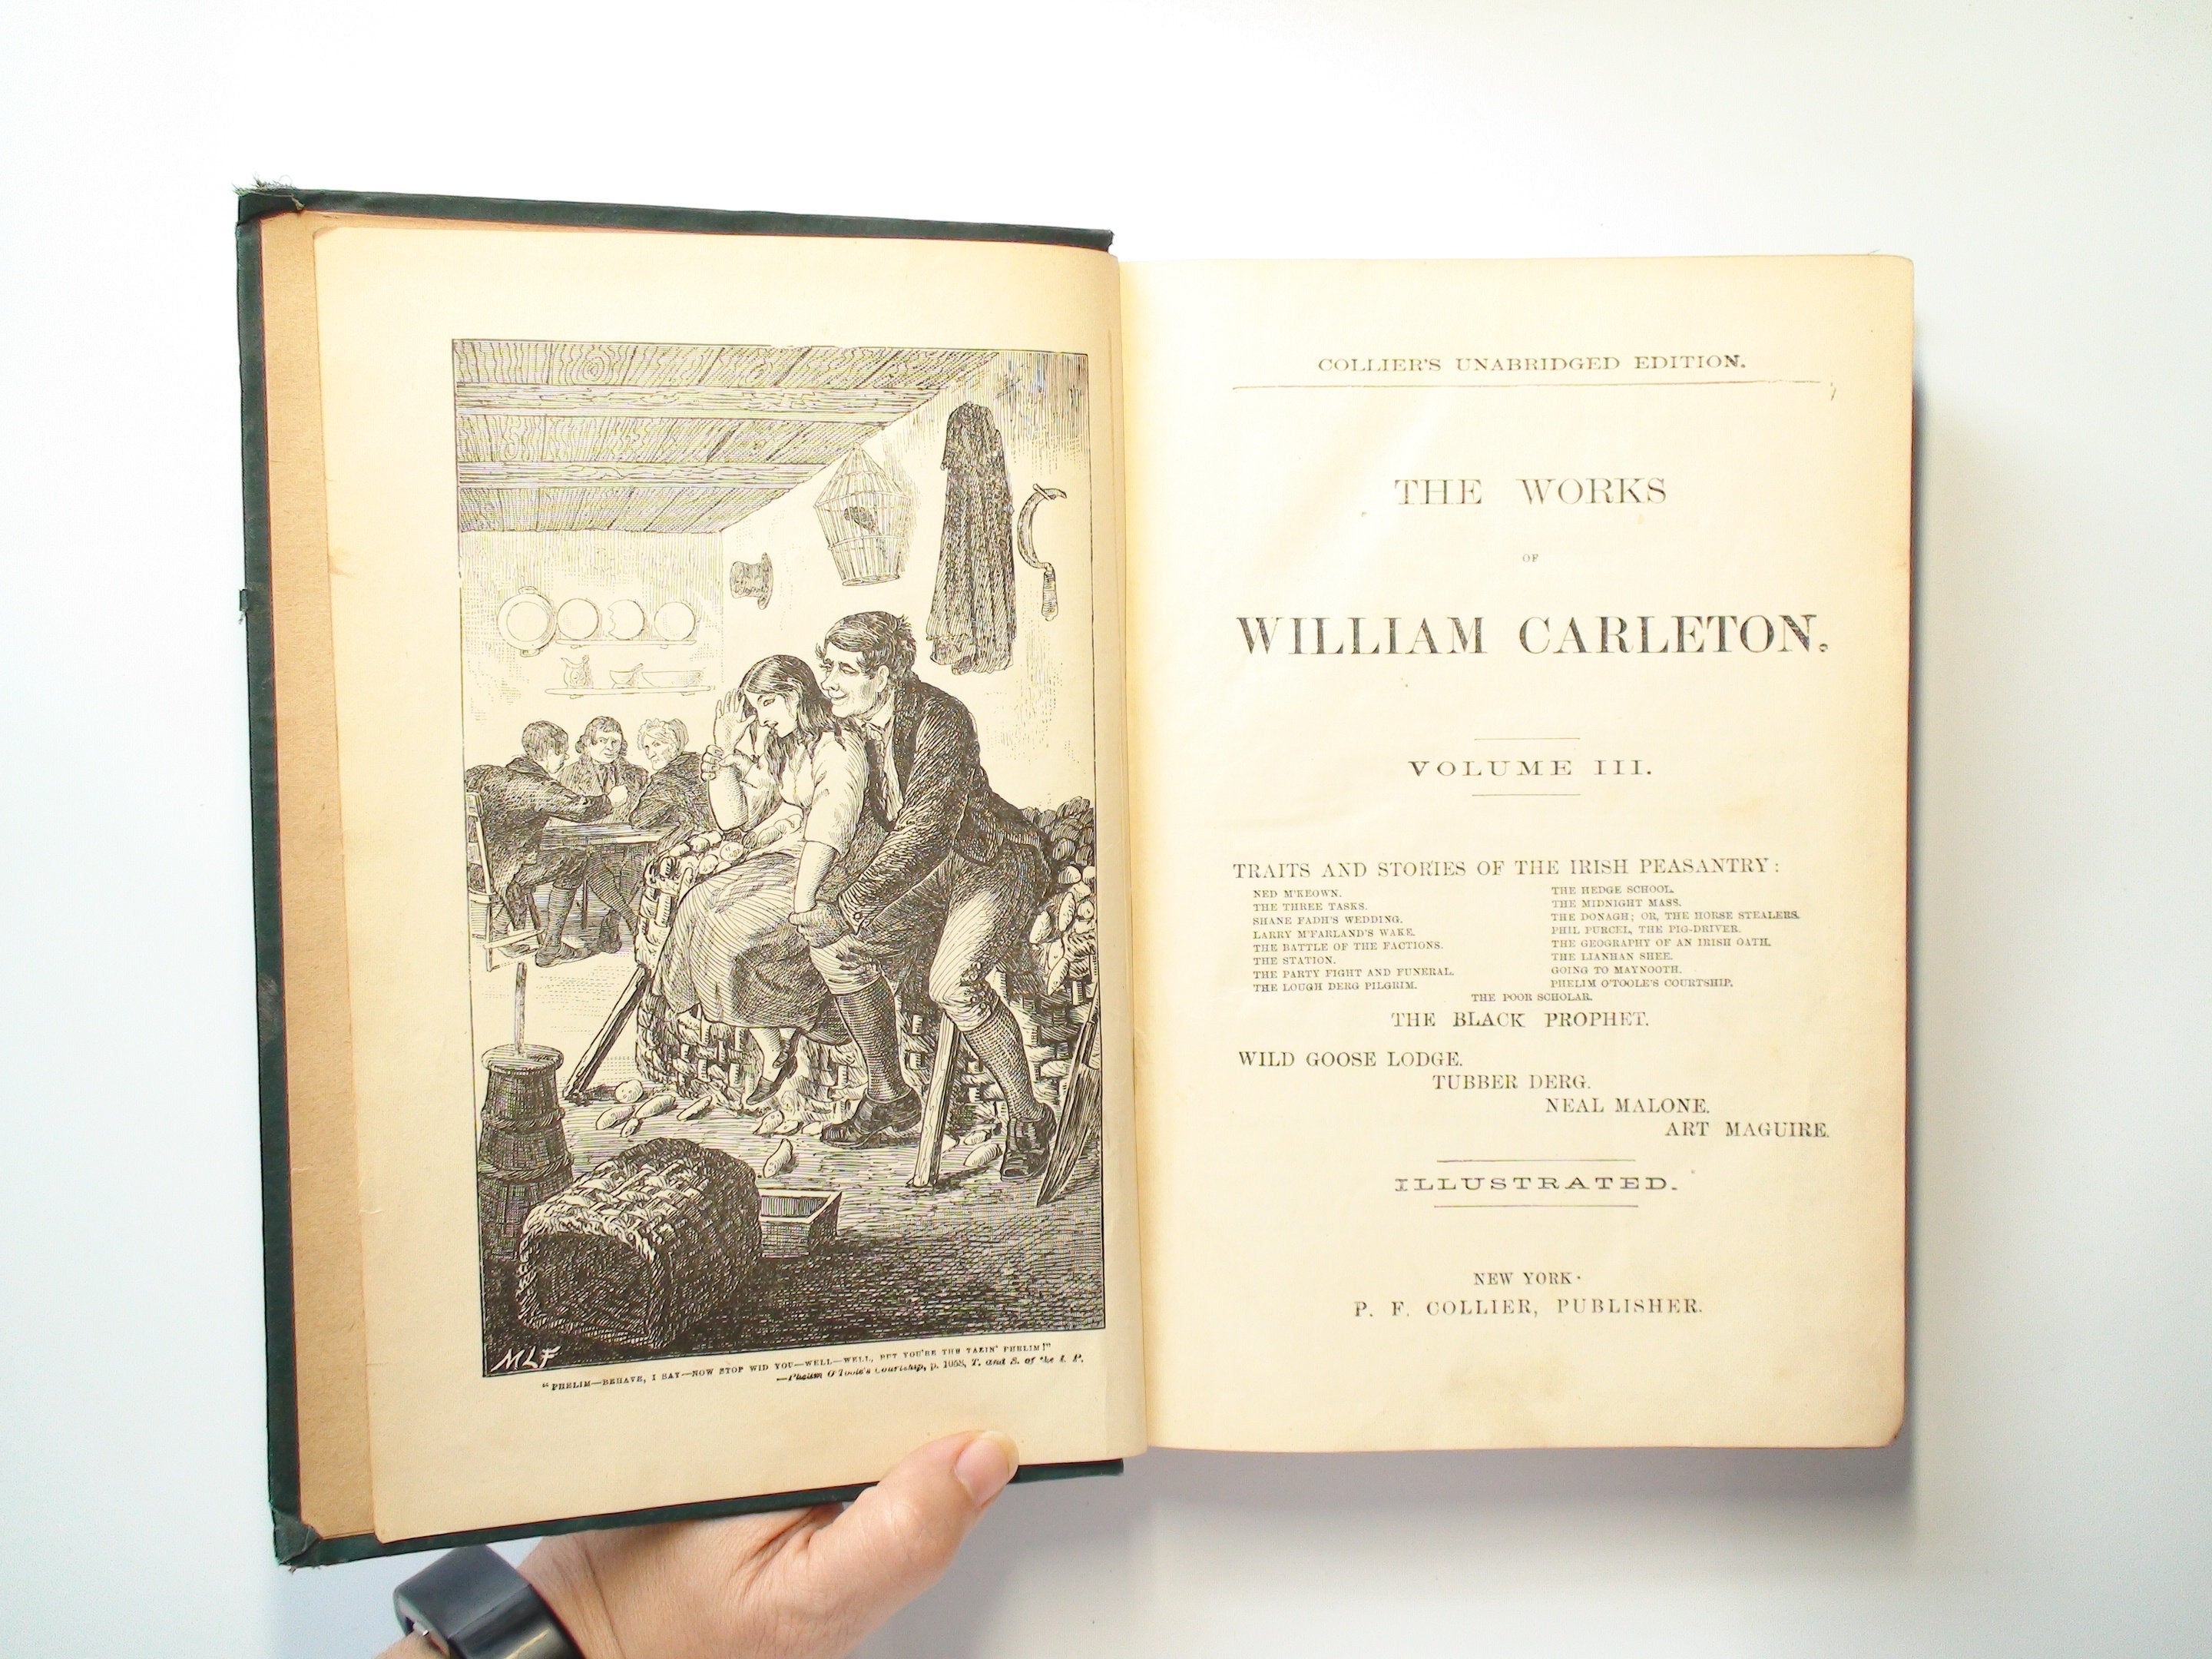 The Works of William Carleton, Volume III, Illustrated, Unabridged Ed, 1890